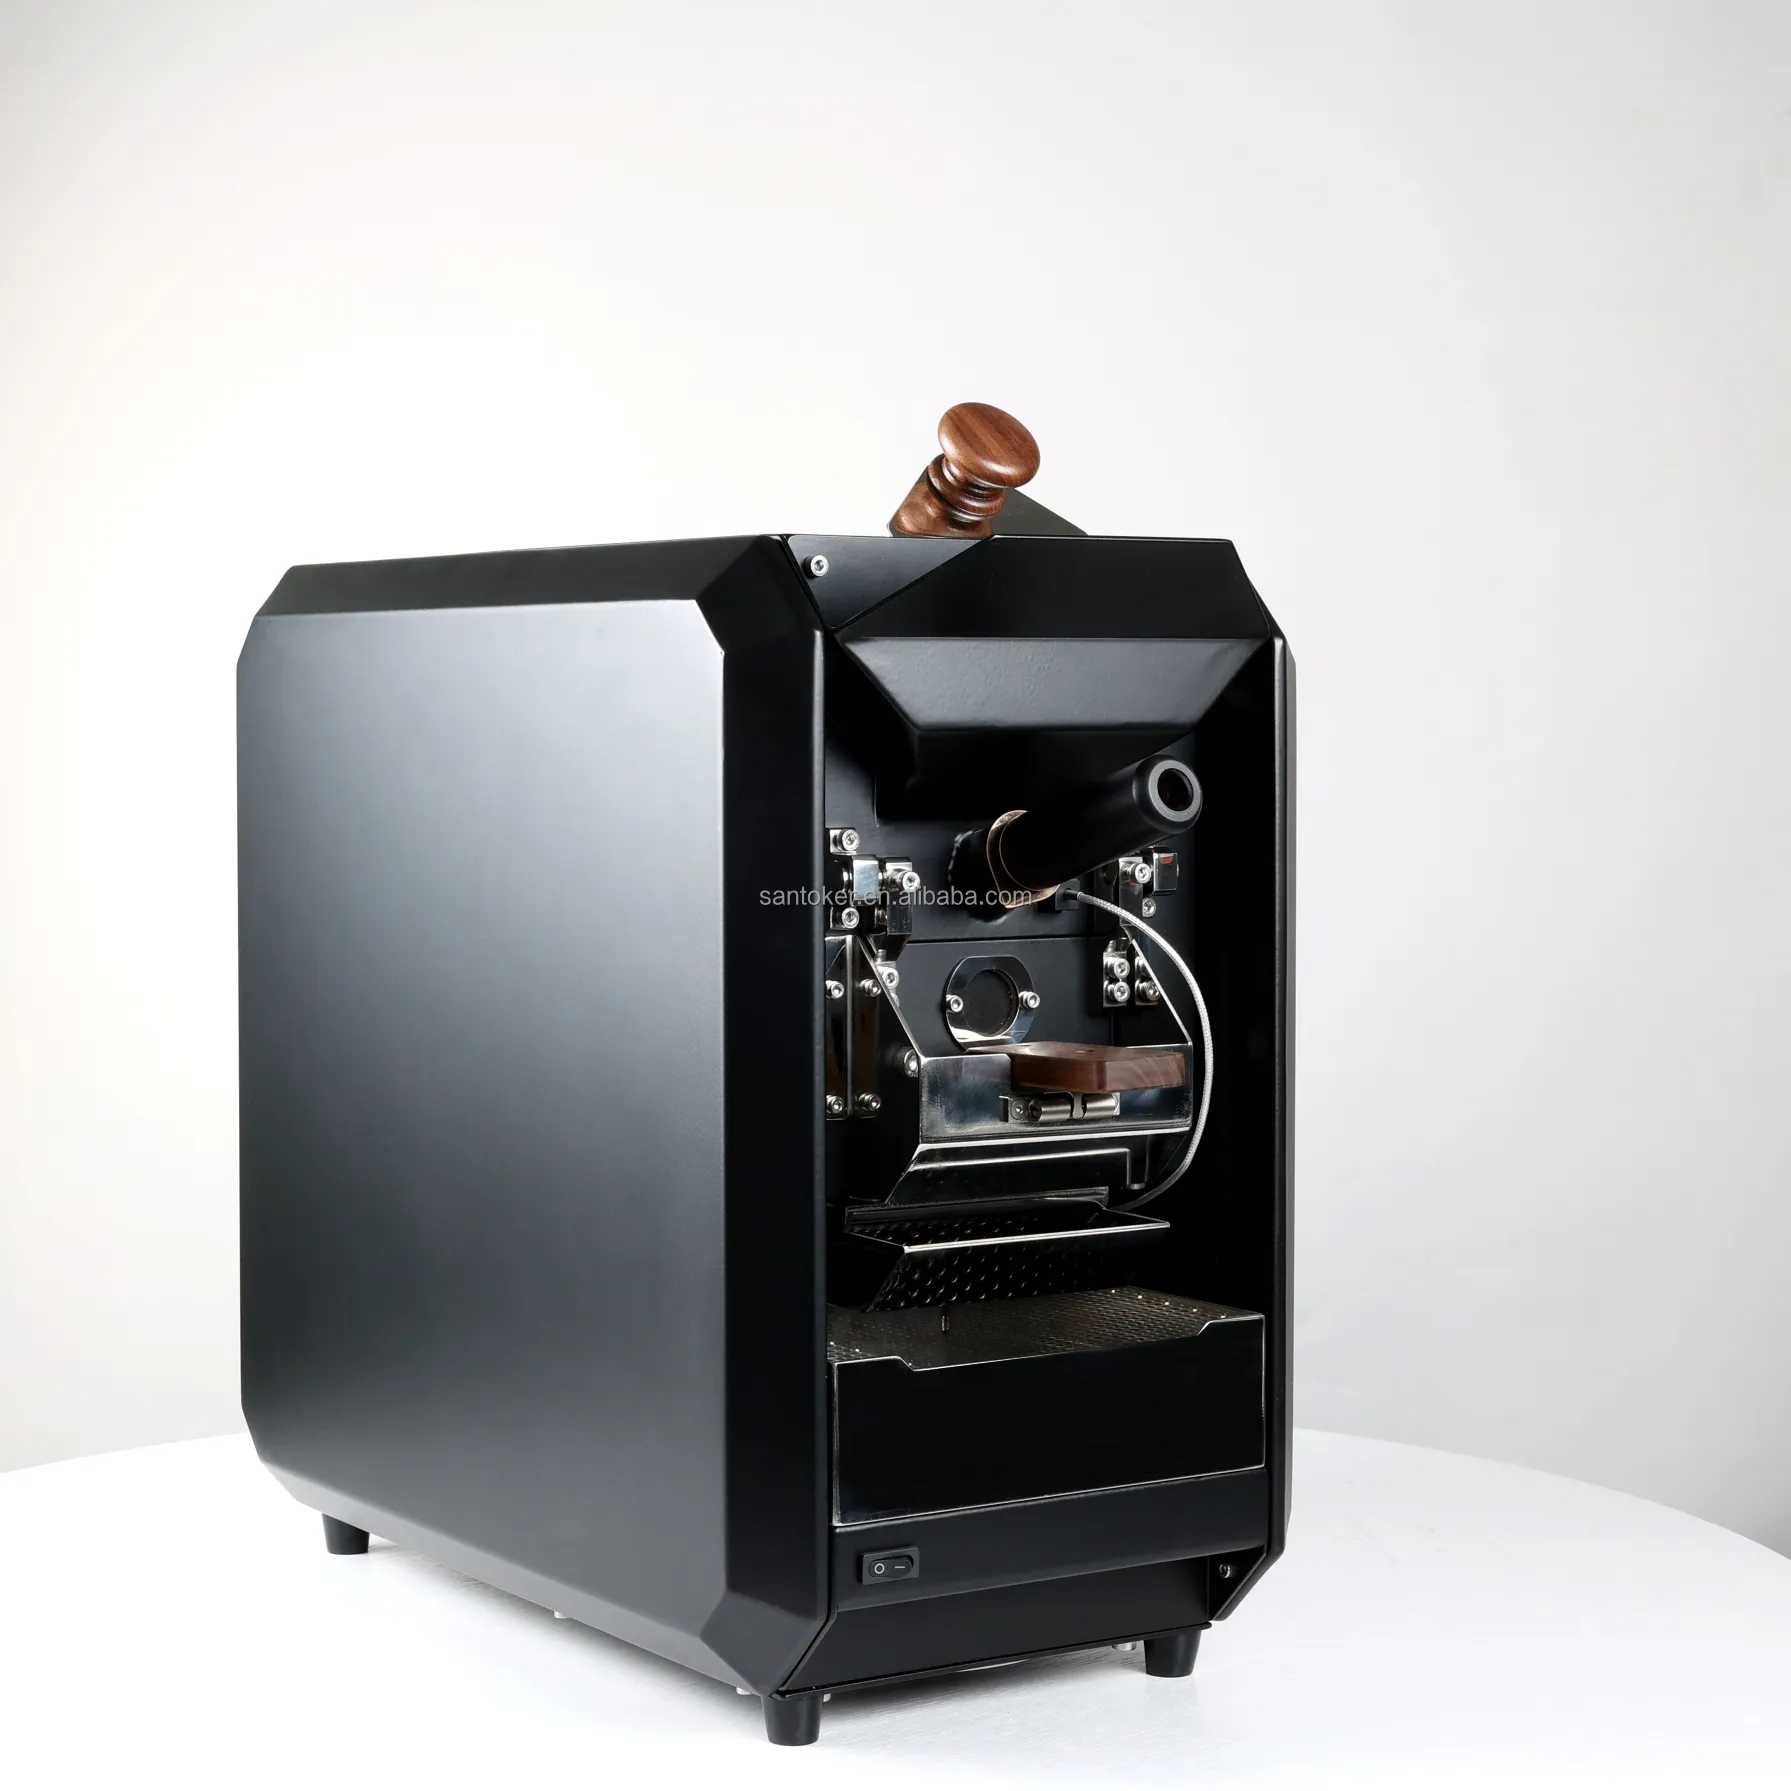 SANTOKER X3 Master 50-300g Máquina para hornear granos de café Tostador de café Cuerpo negro Fuego Calefacción eléctrica caliente Tostador de café